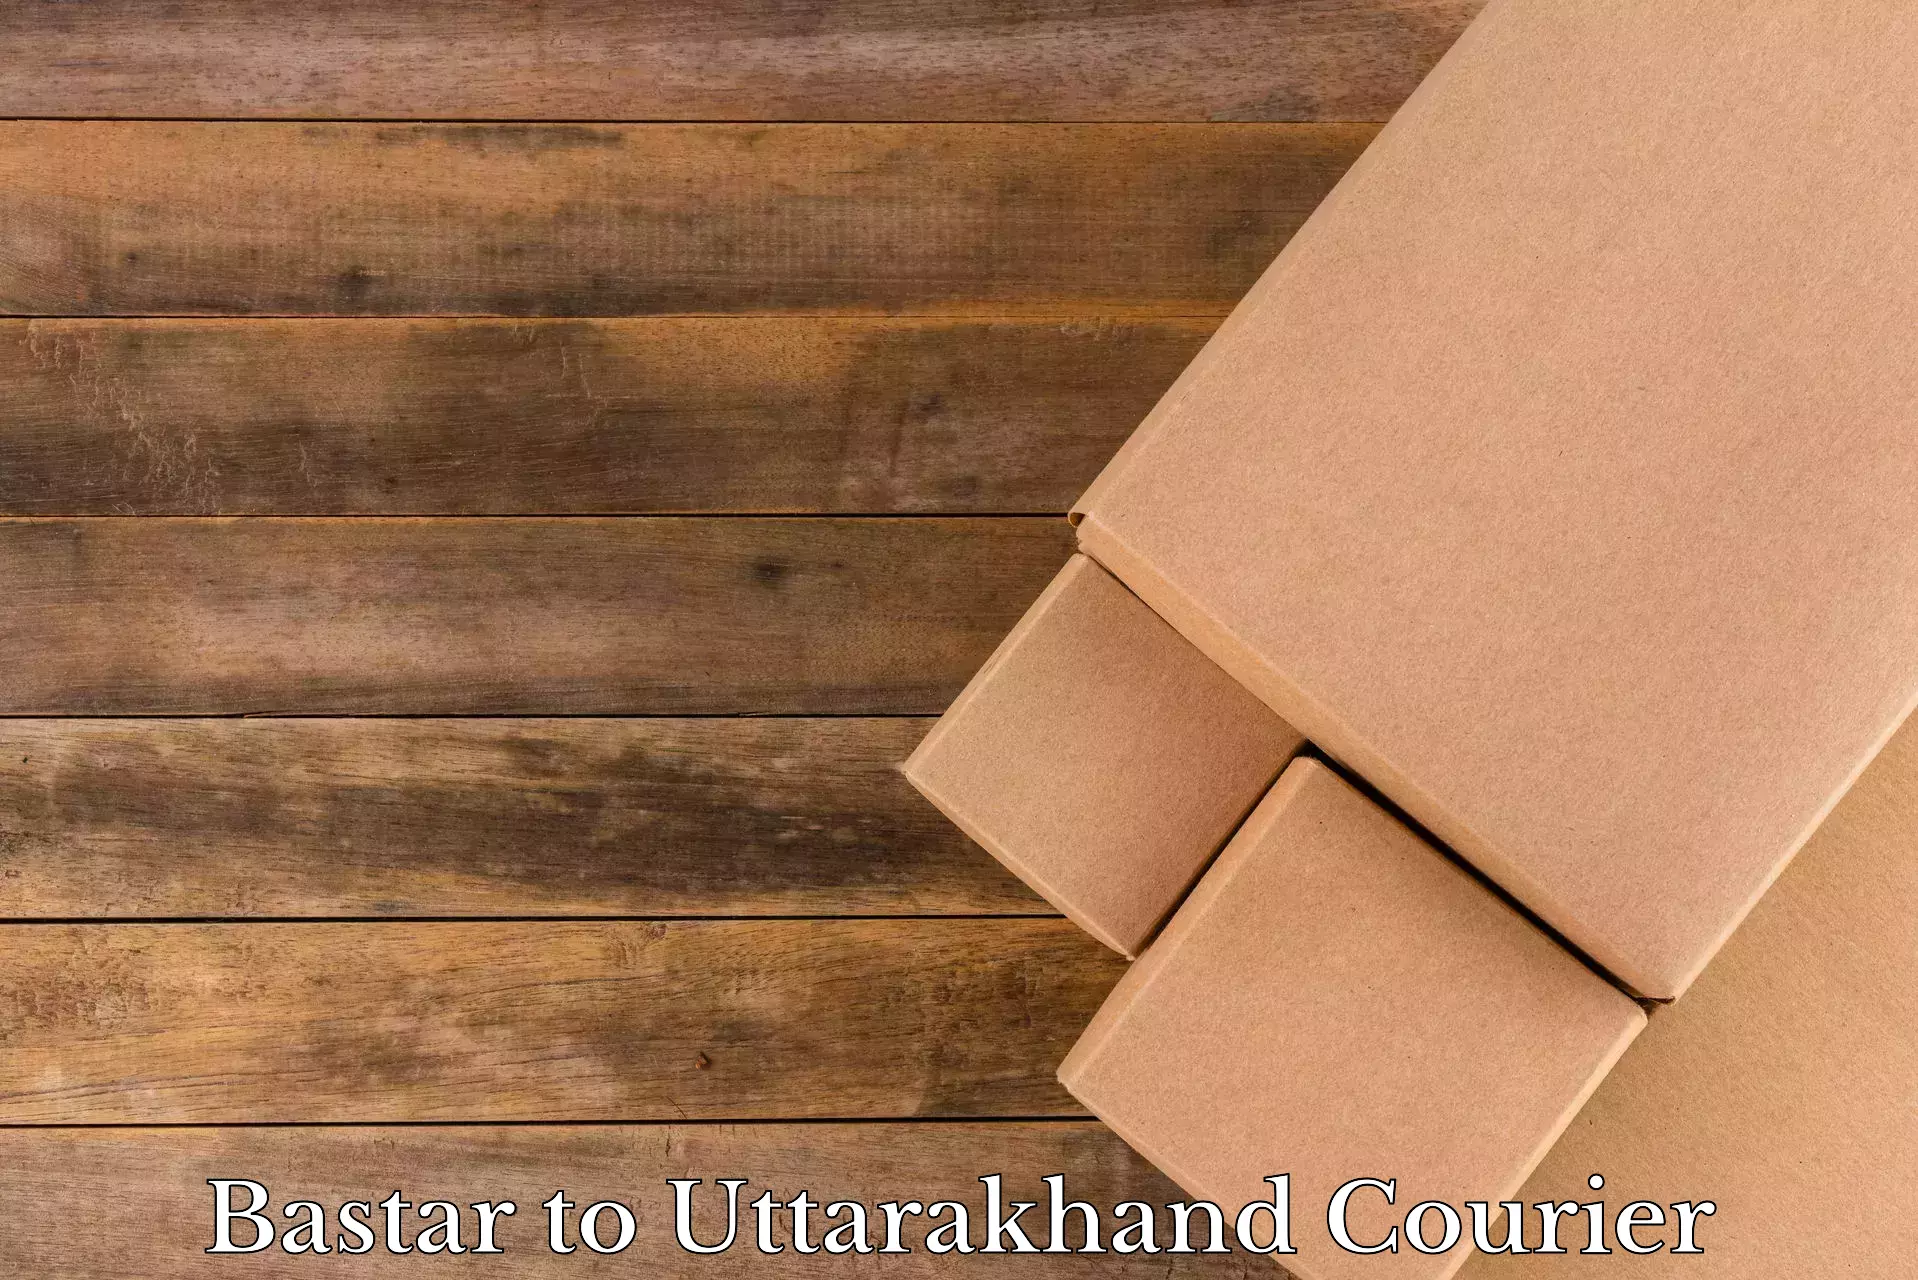 Trusted moving company Bastar to Uttarakhand